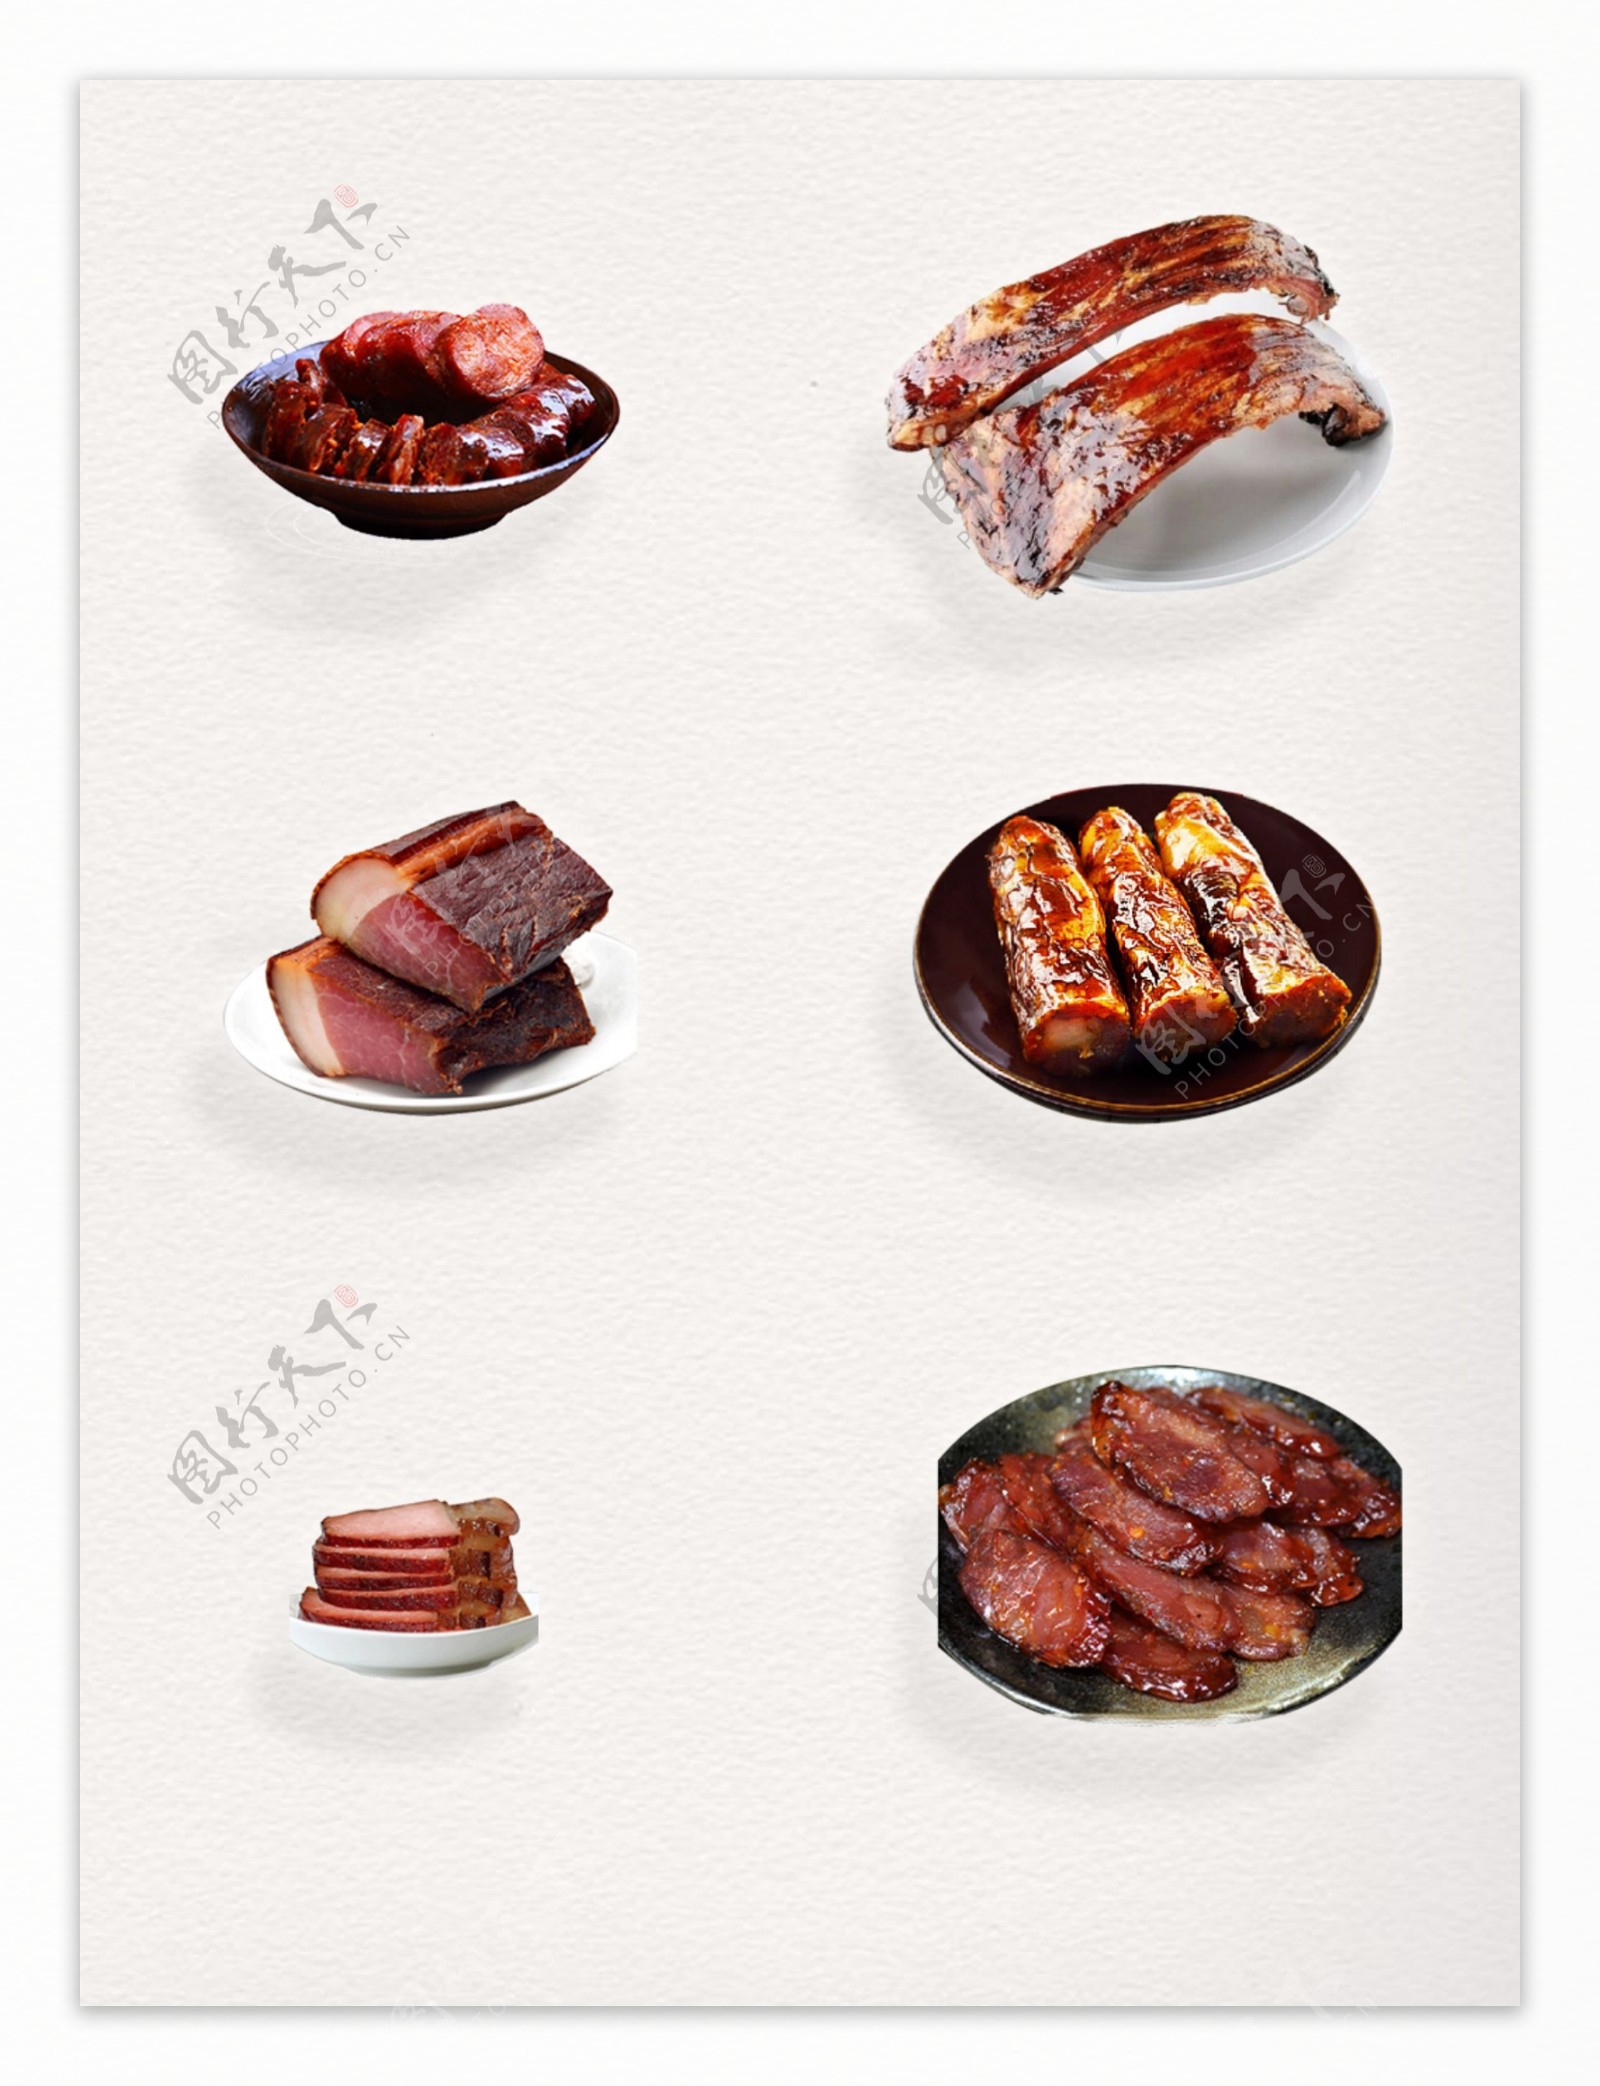 中式小吃风味美食腊味食品装饰图案